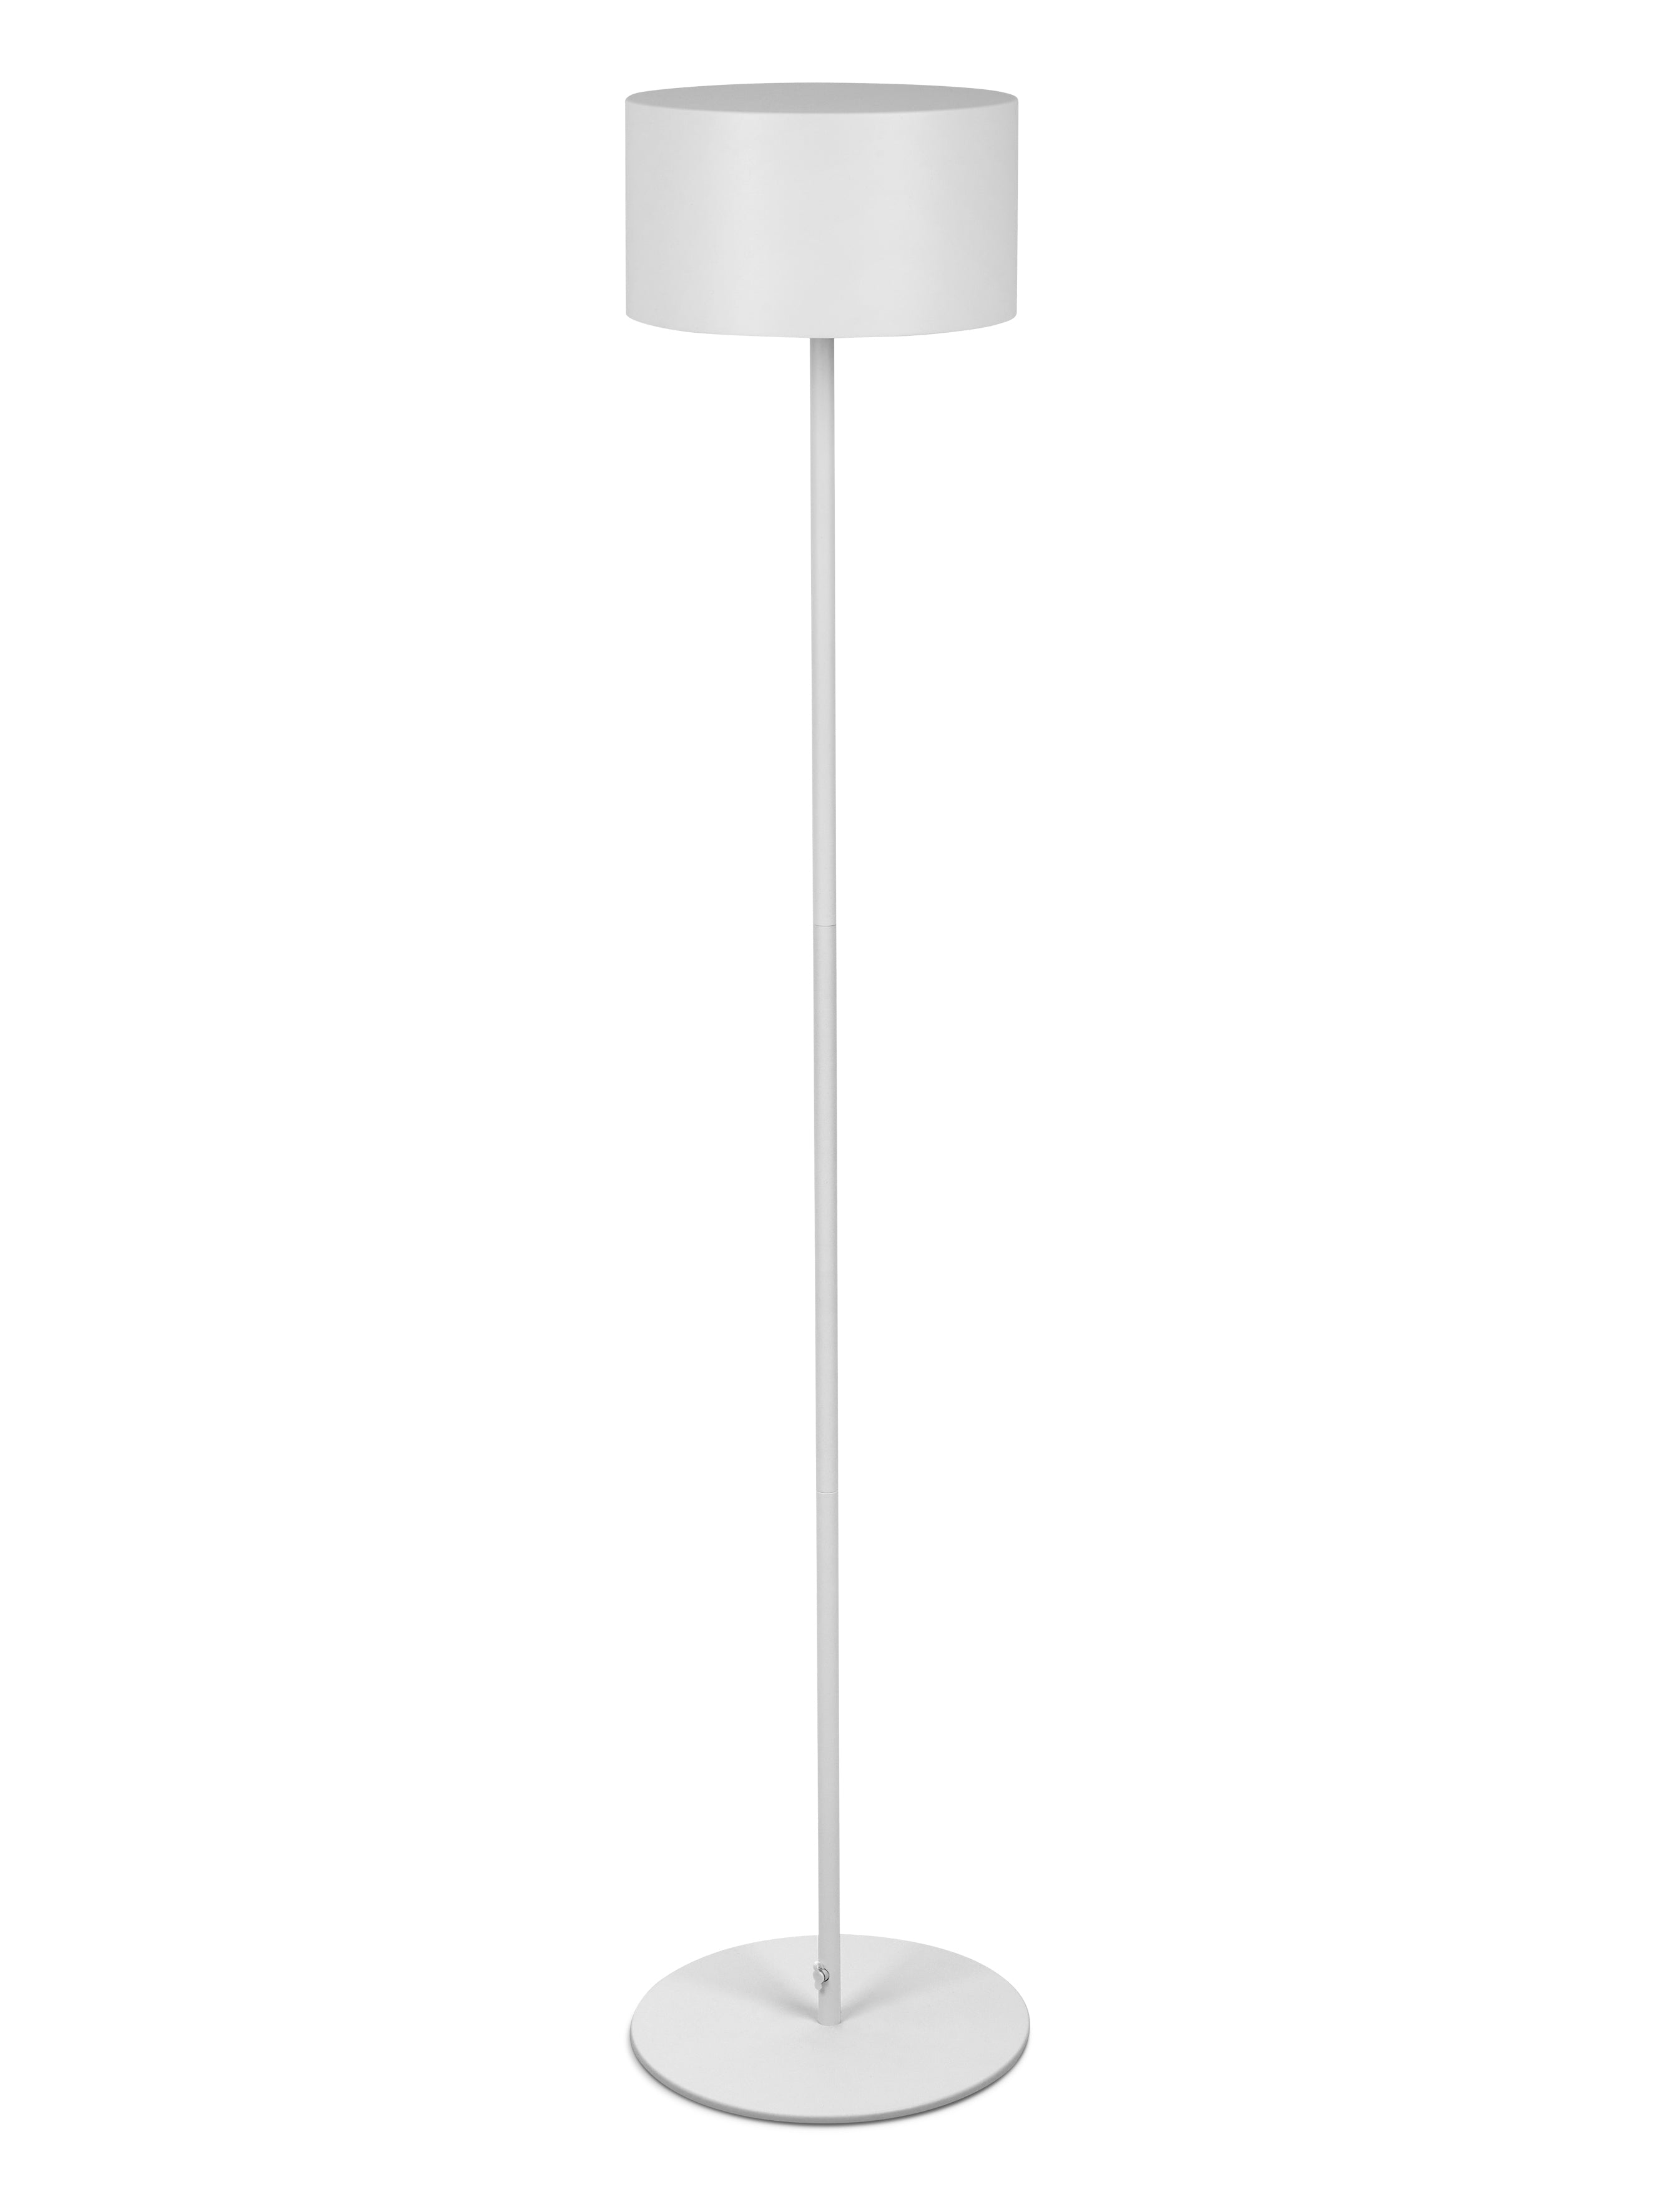 Arnold XL von Moree; runde Outdoor LED-Stehleuchte aus pulverbeschichtetem Aluminium in Weiß mit USB Netzteil und Ladestation.